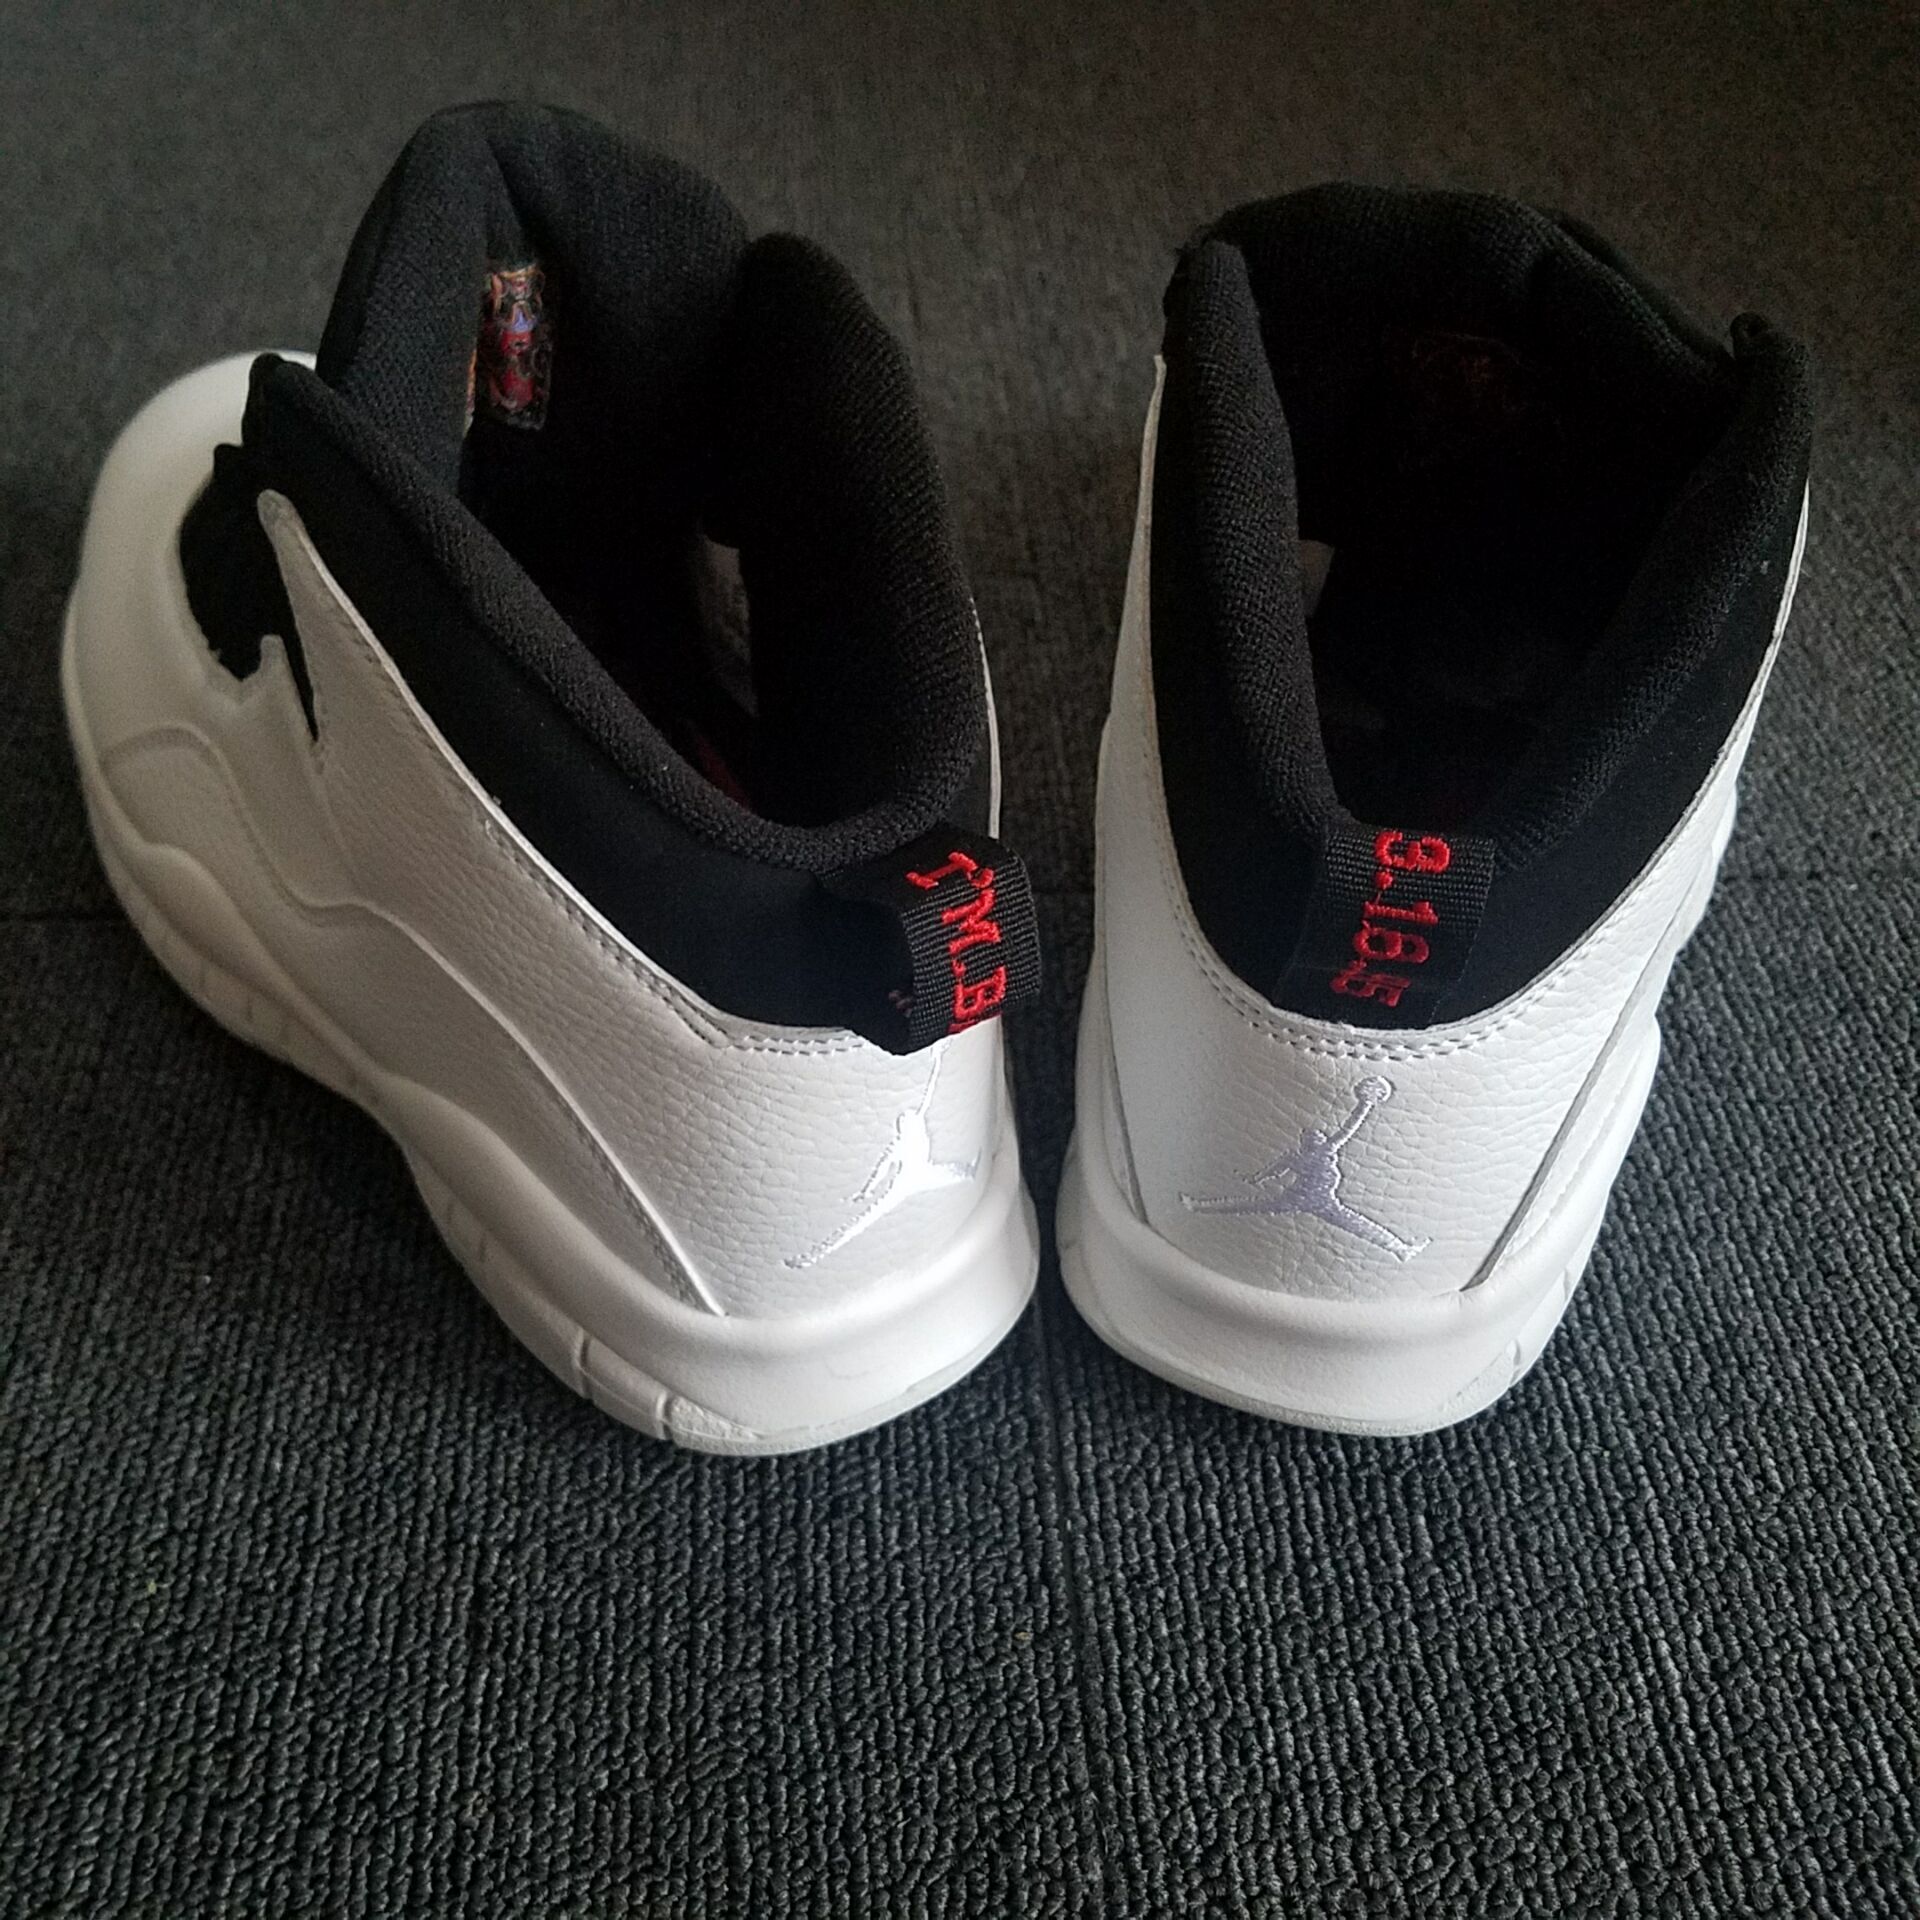 New Air Jordan 10 Oreo Shoes